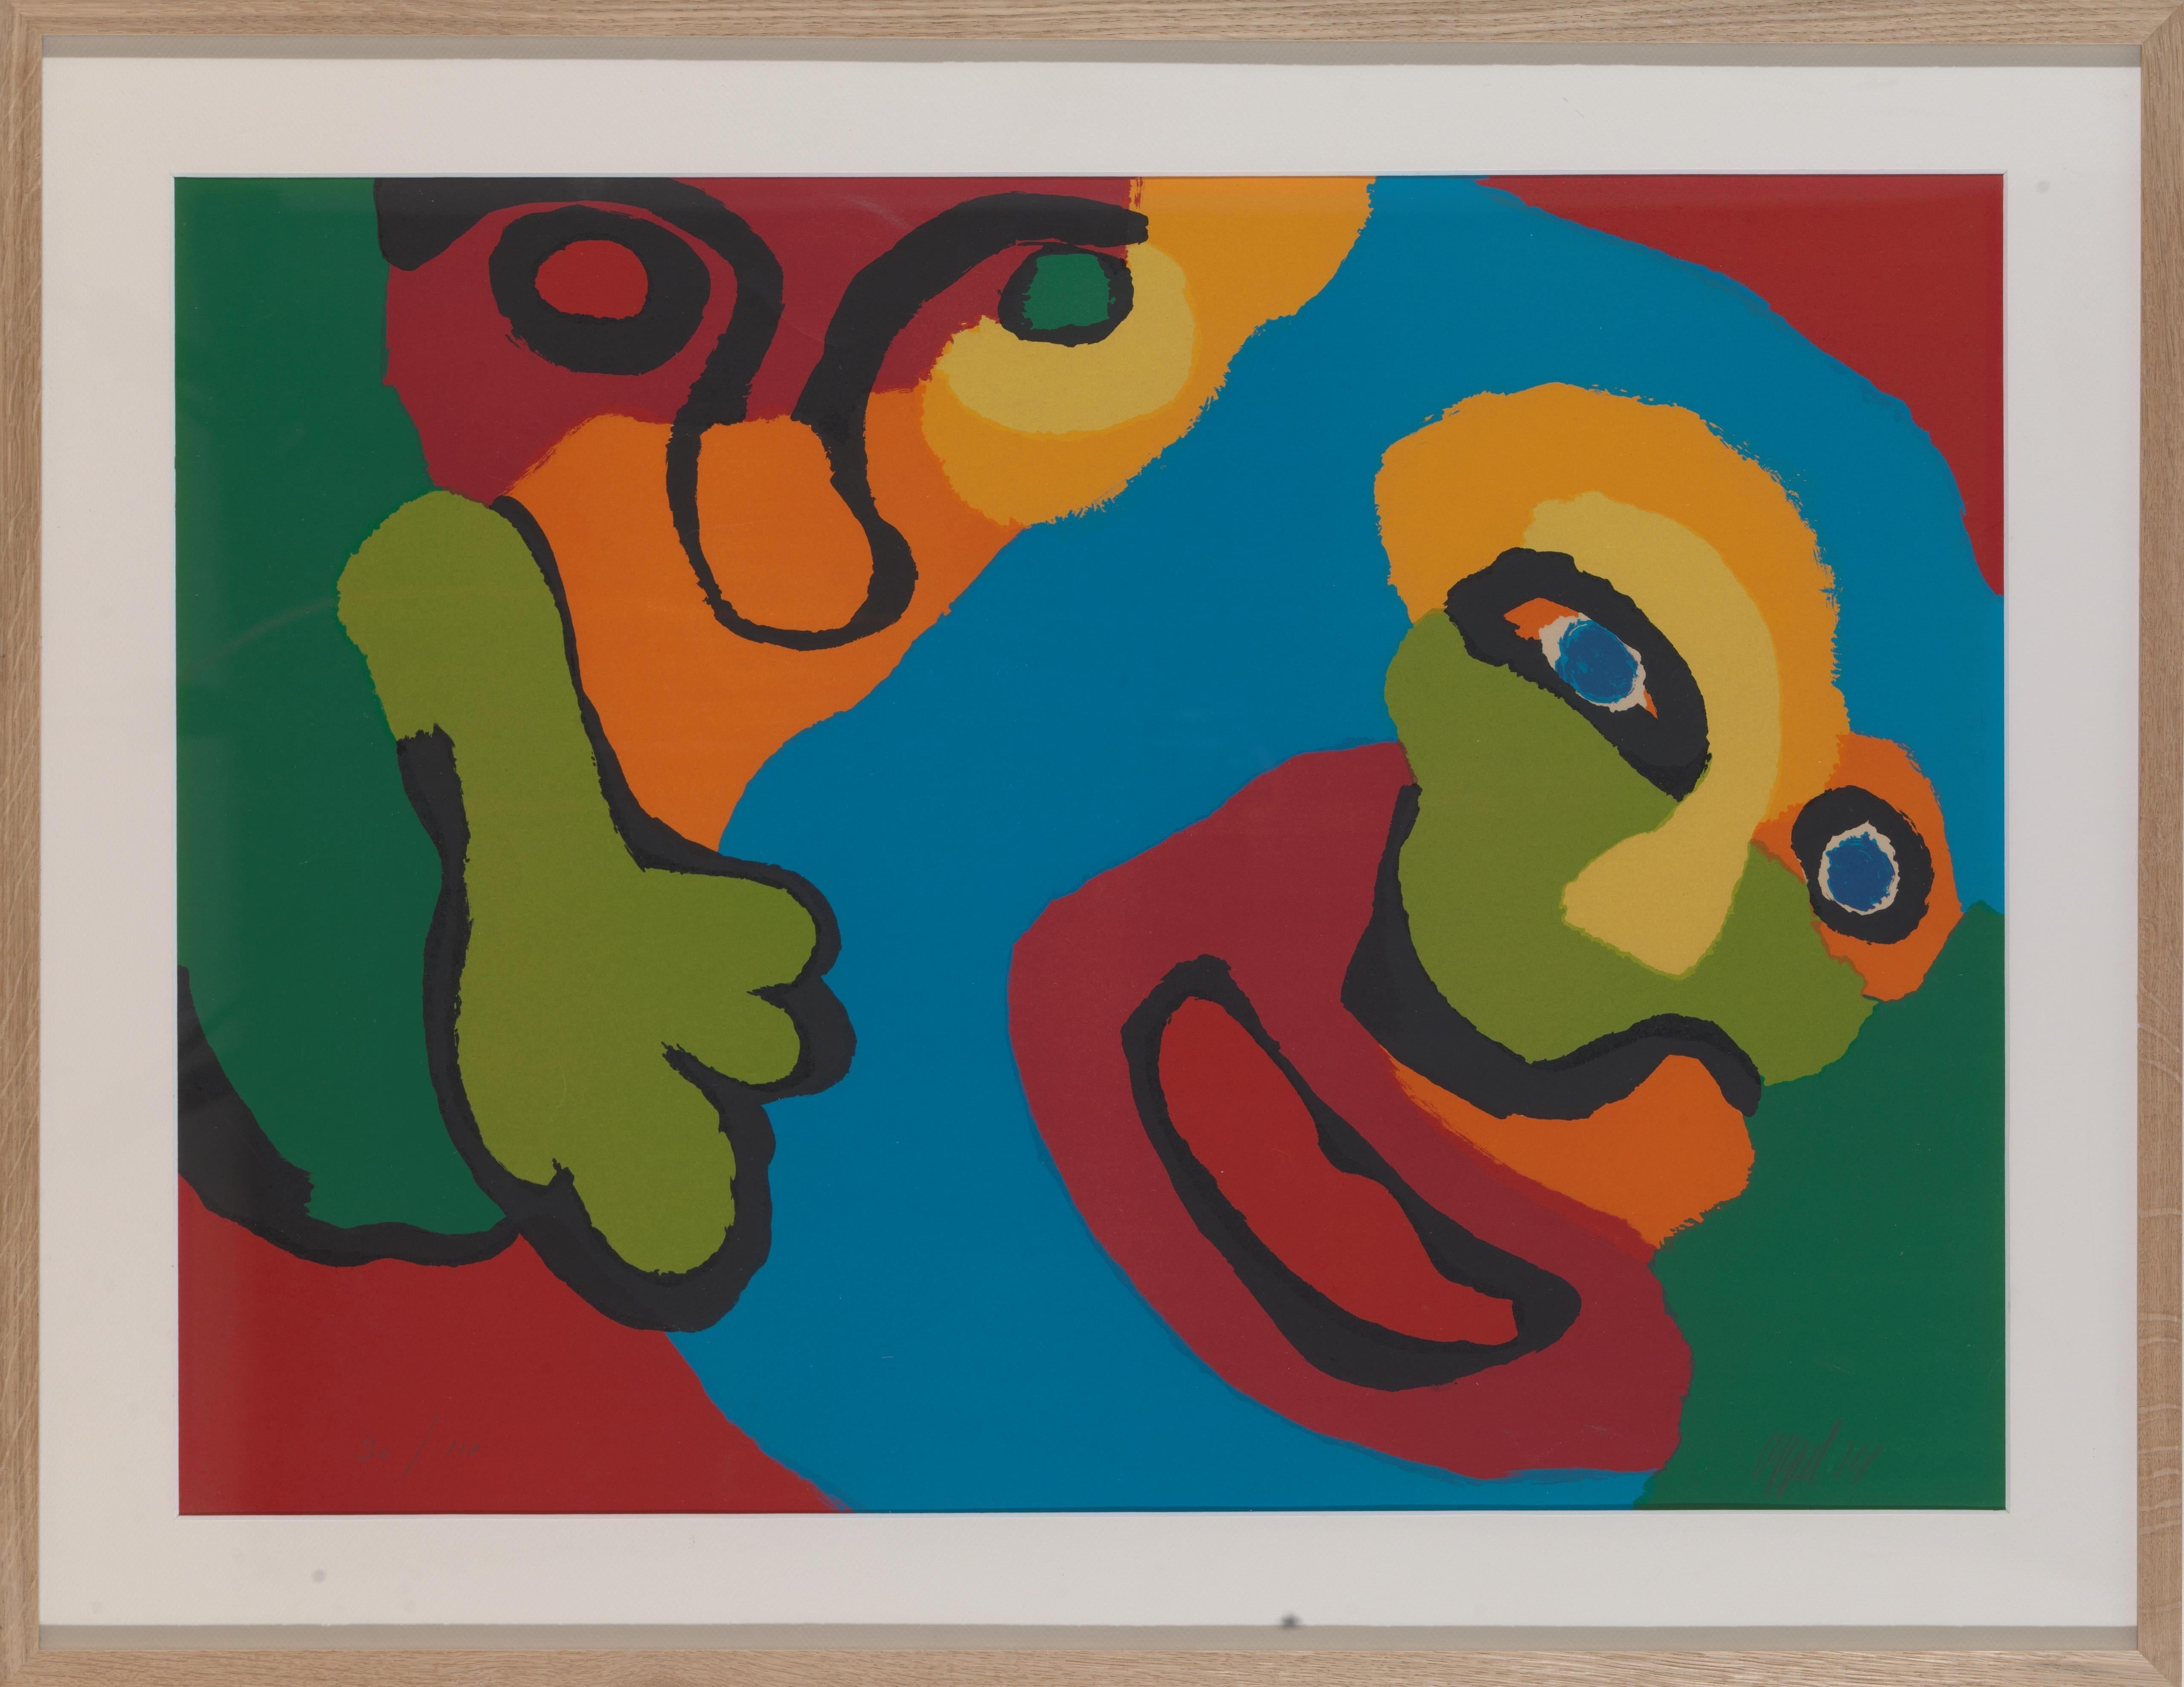 Lebendiger Siebdruck aus dem Jahr 1974 des Künstlers Karel Appel (1921-2006): ausdrucksstarke und kräftige Komposition und Farben. Mit Bleistift signiert: 